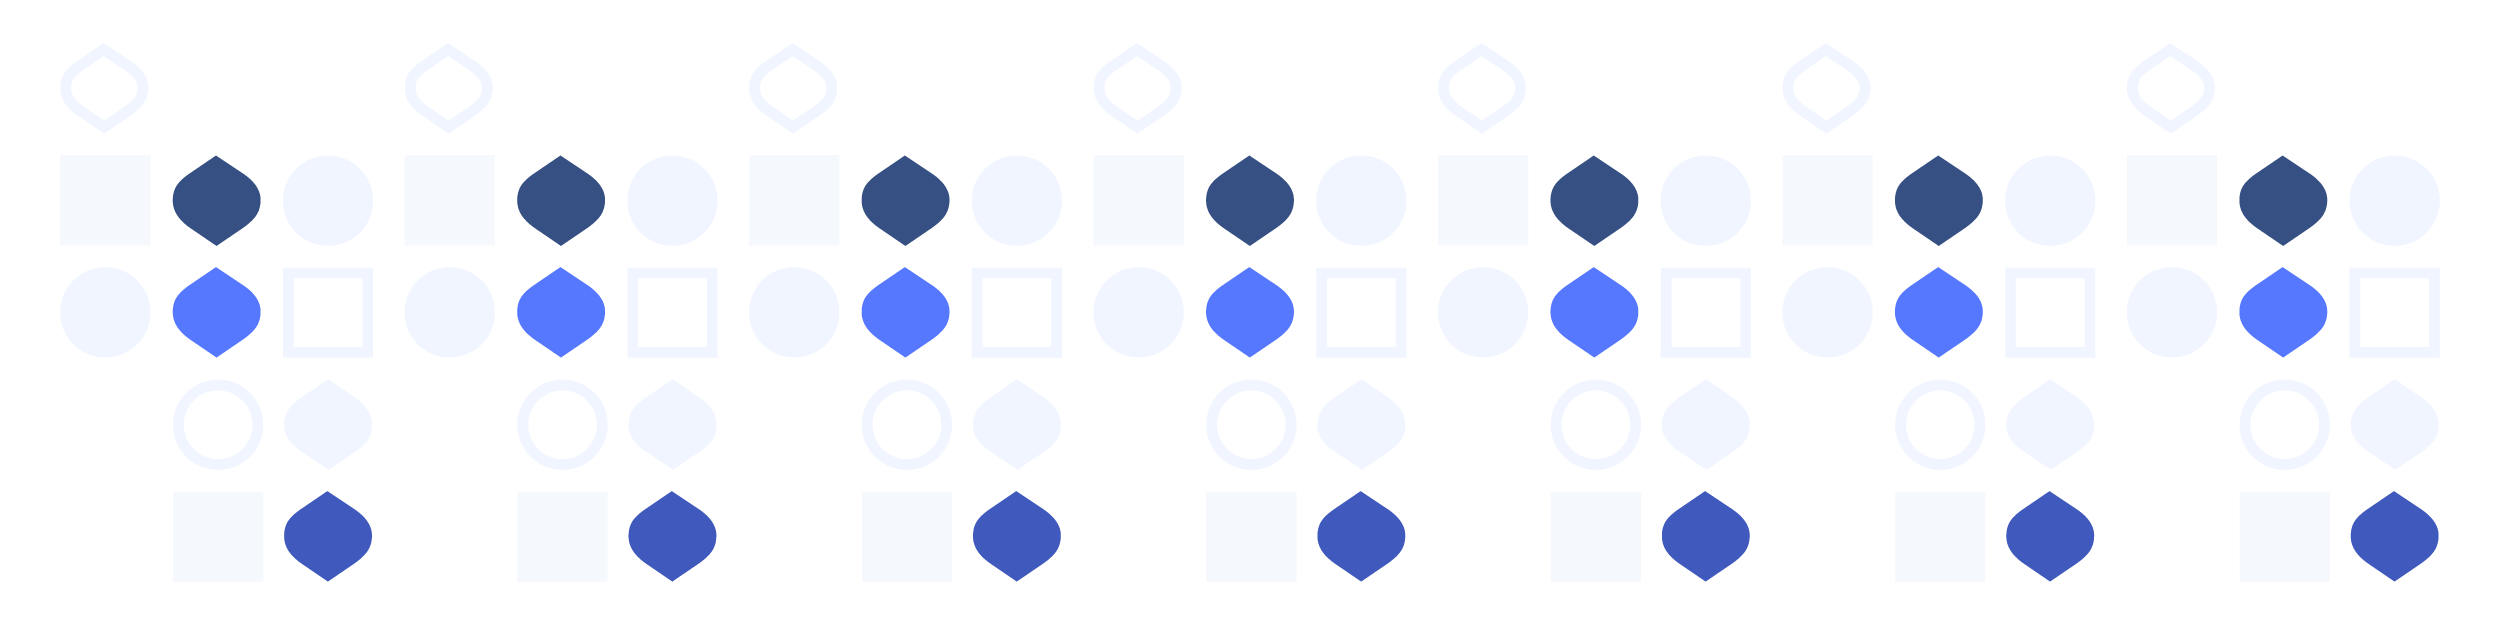 bancoli graphic pattern